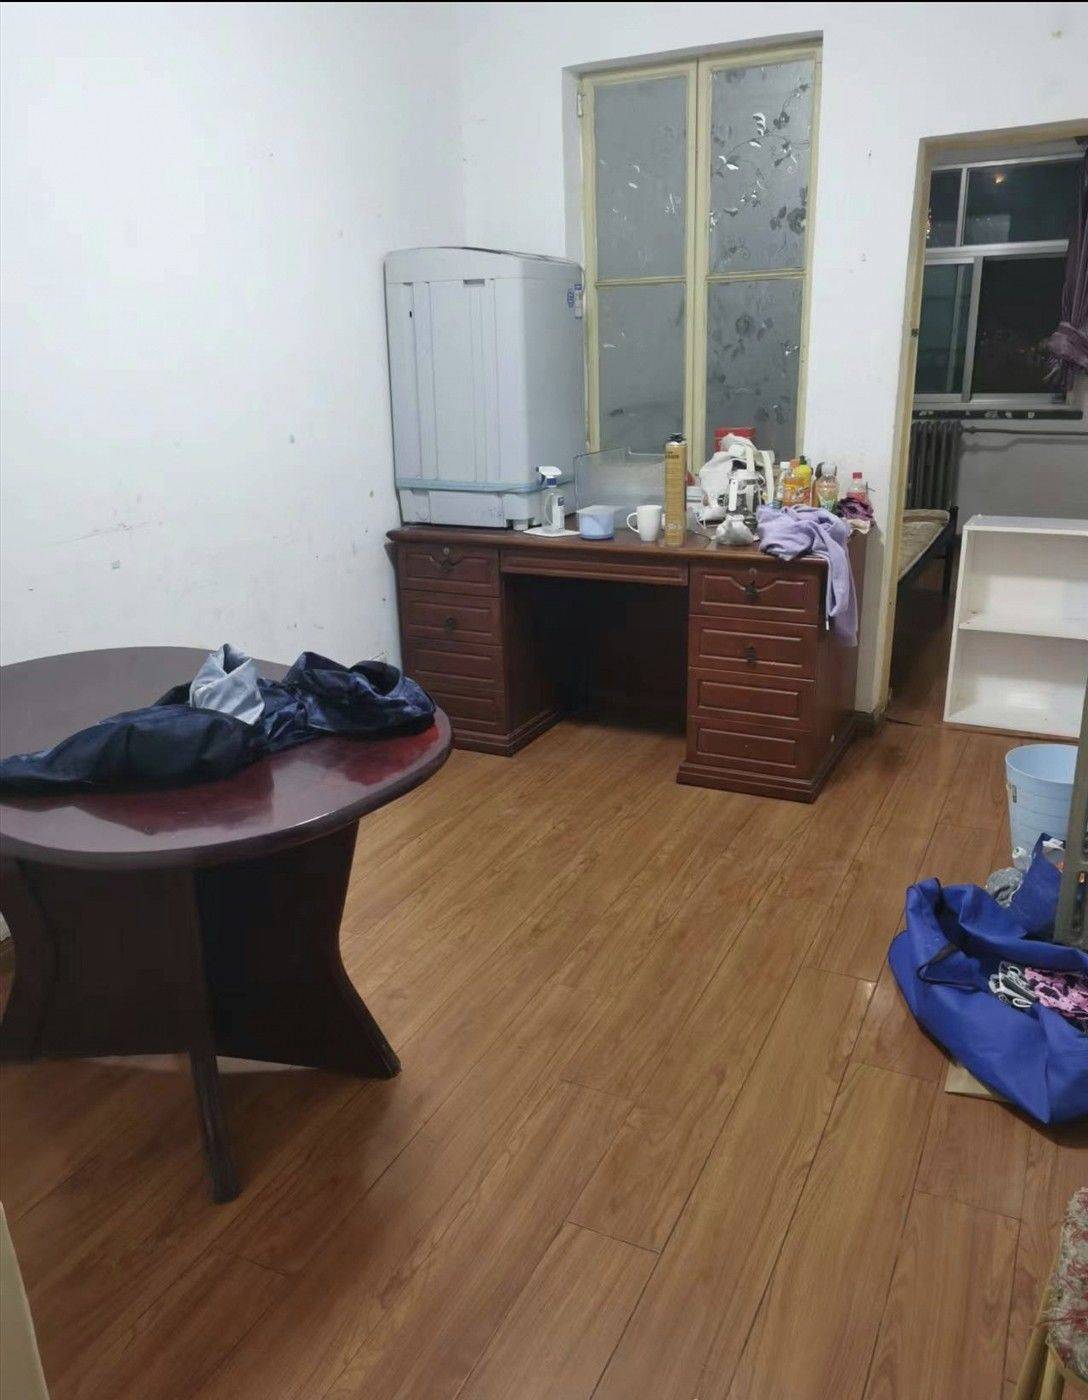 Beijing-Shijingshan-Cozy Home,Clean&Comfy,No Gender Limit,Hustle & Bustle